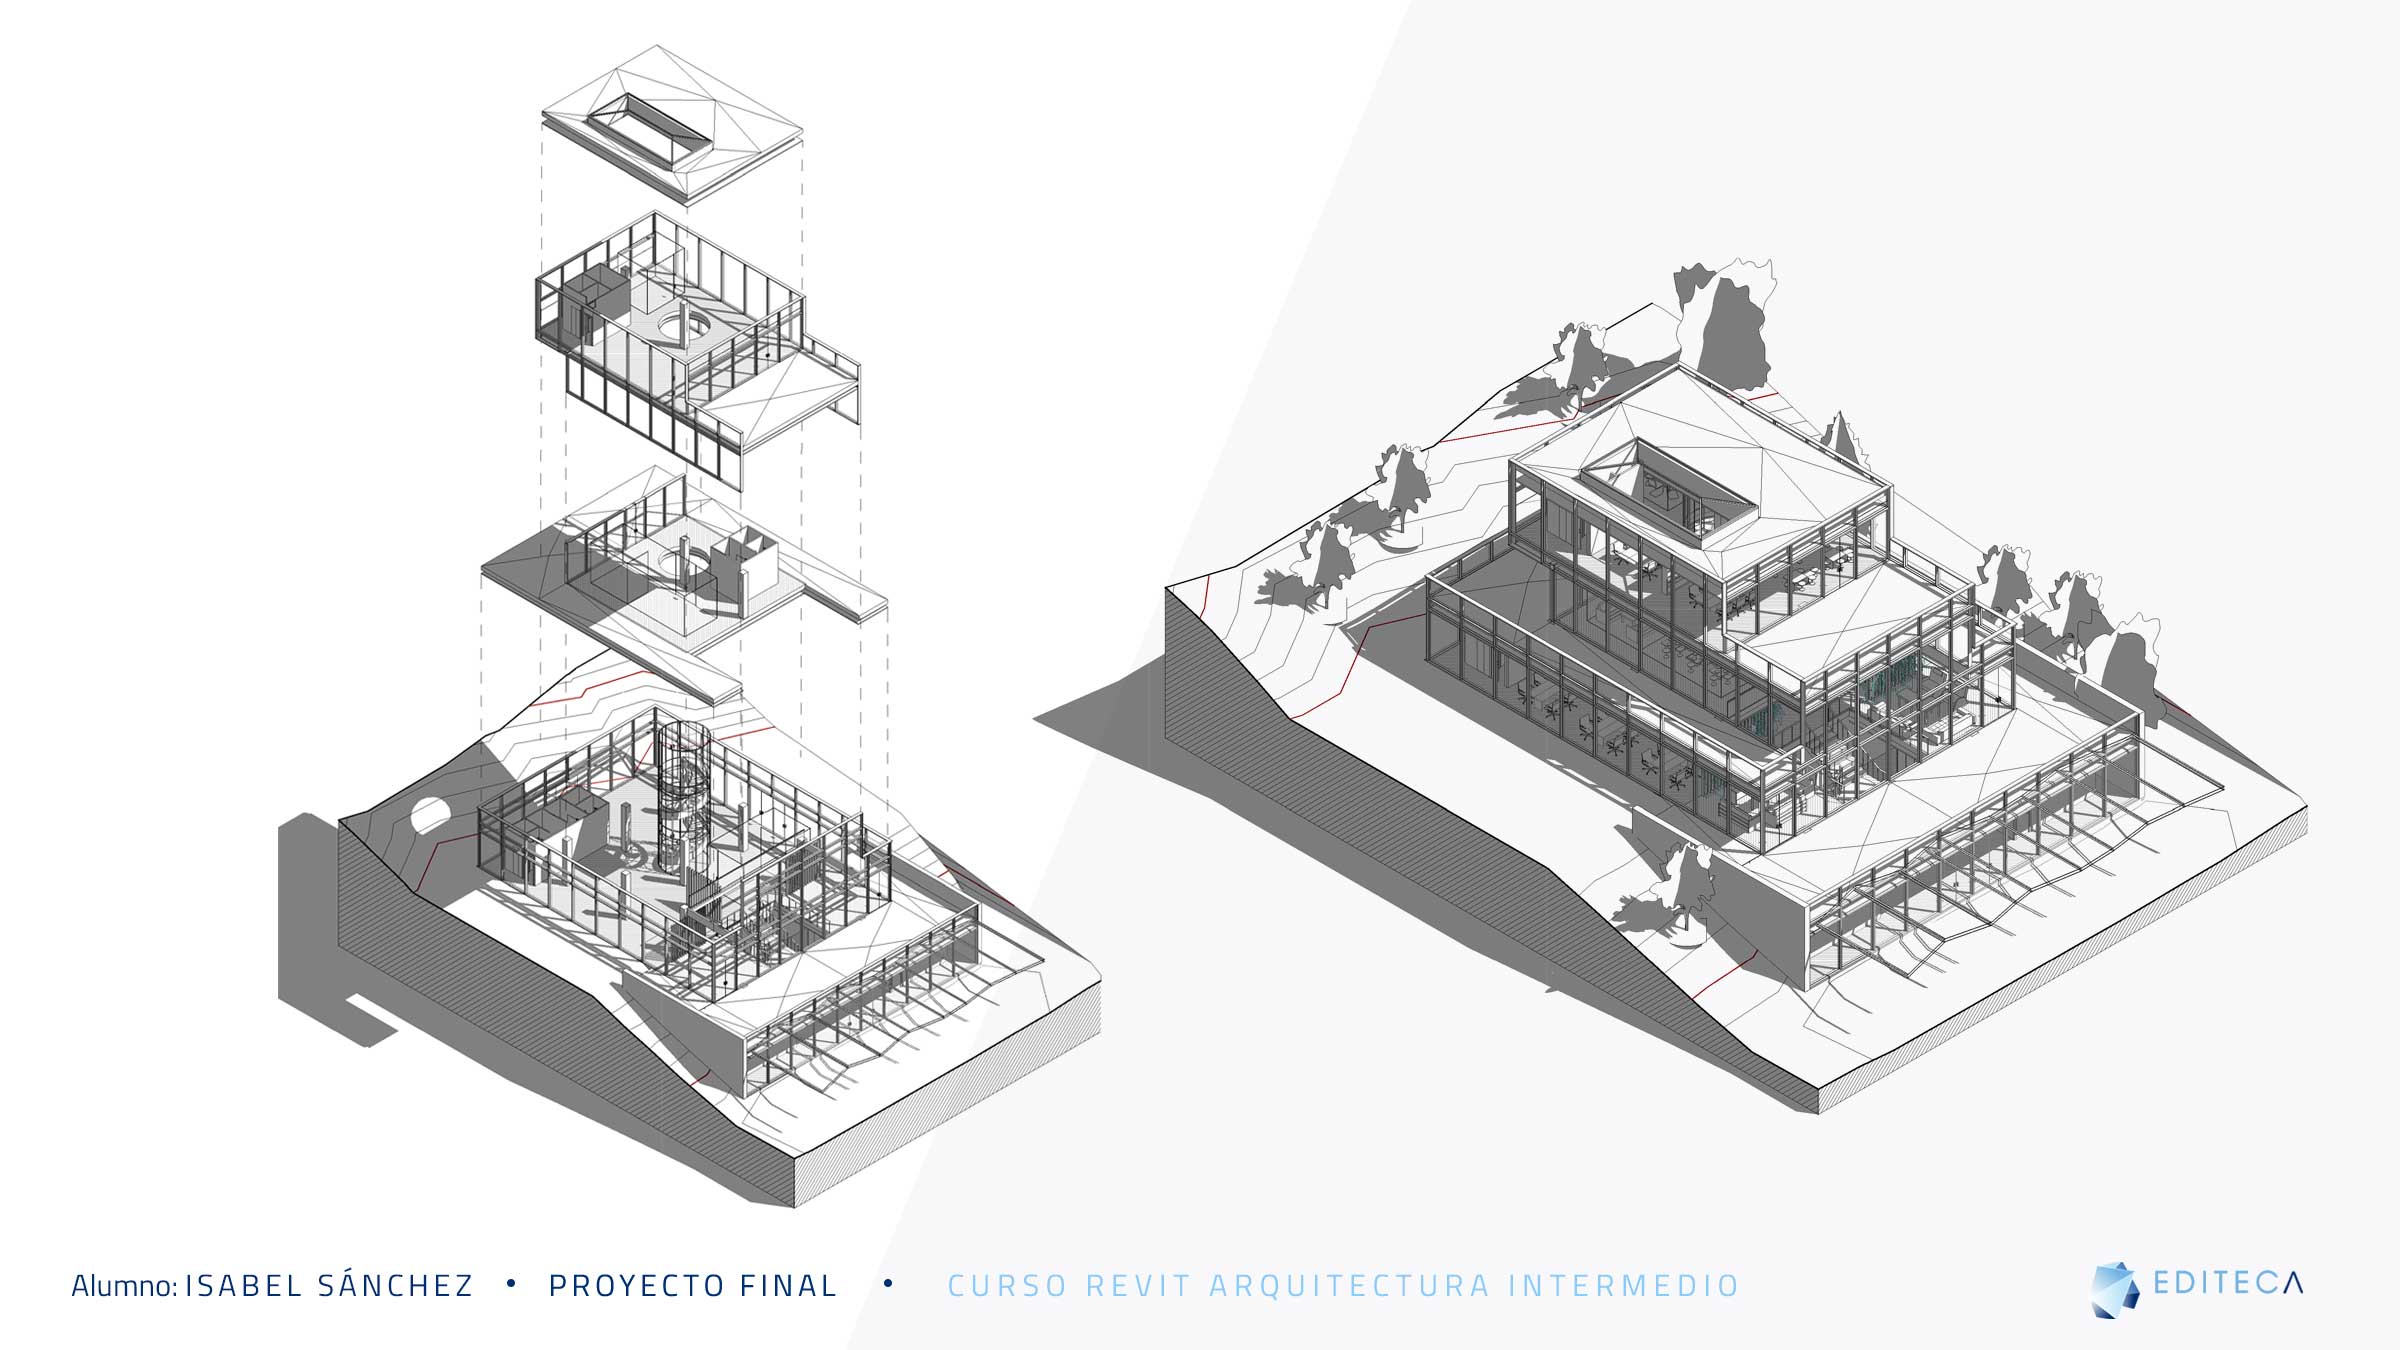 Proyecto Revit Arquitectura (II) Intermedio — Isabel Sánchez